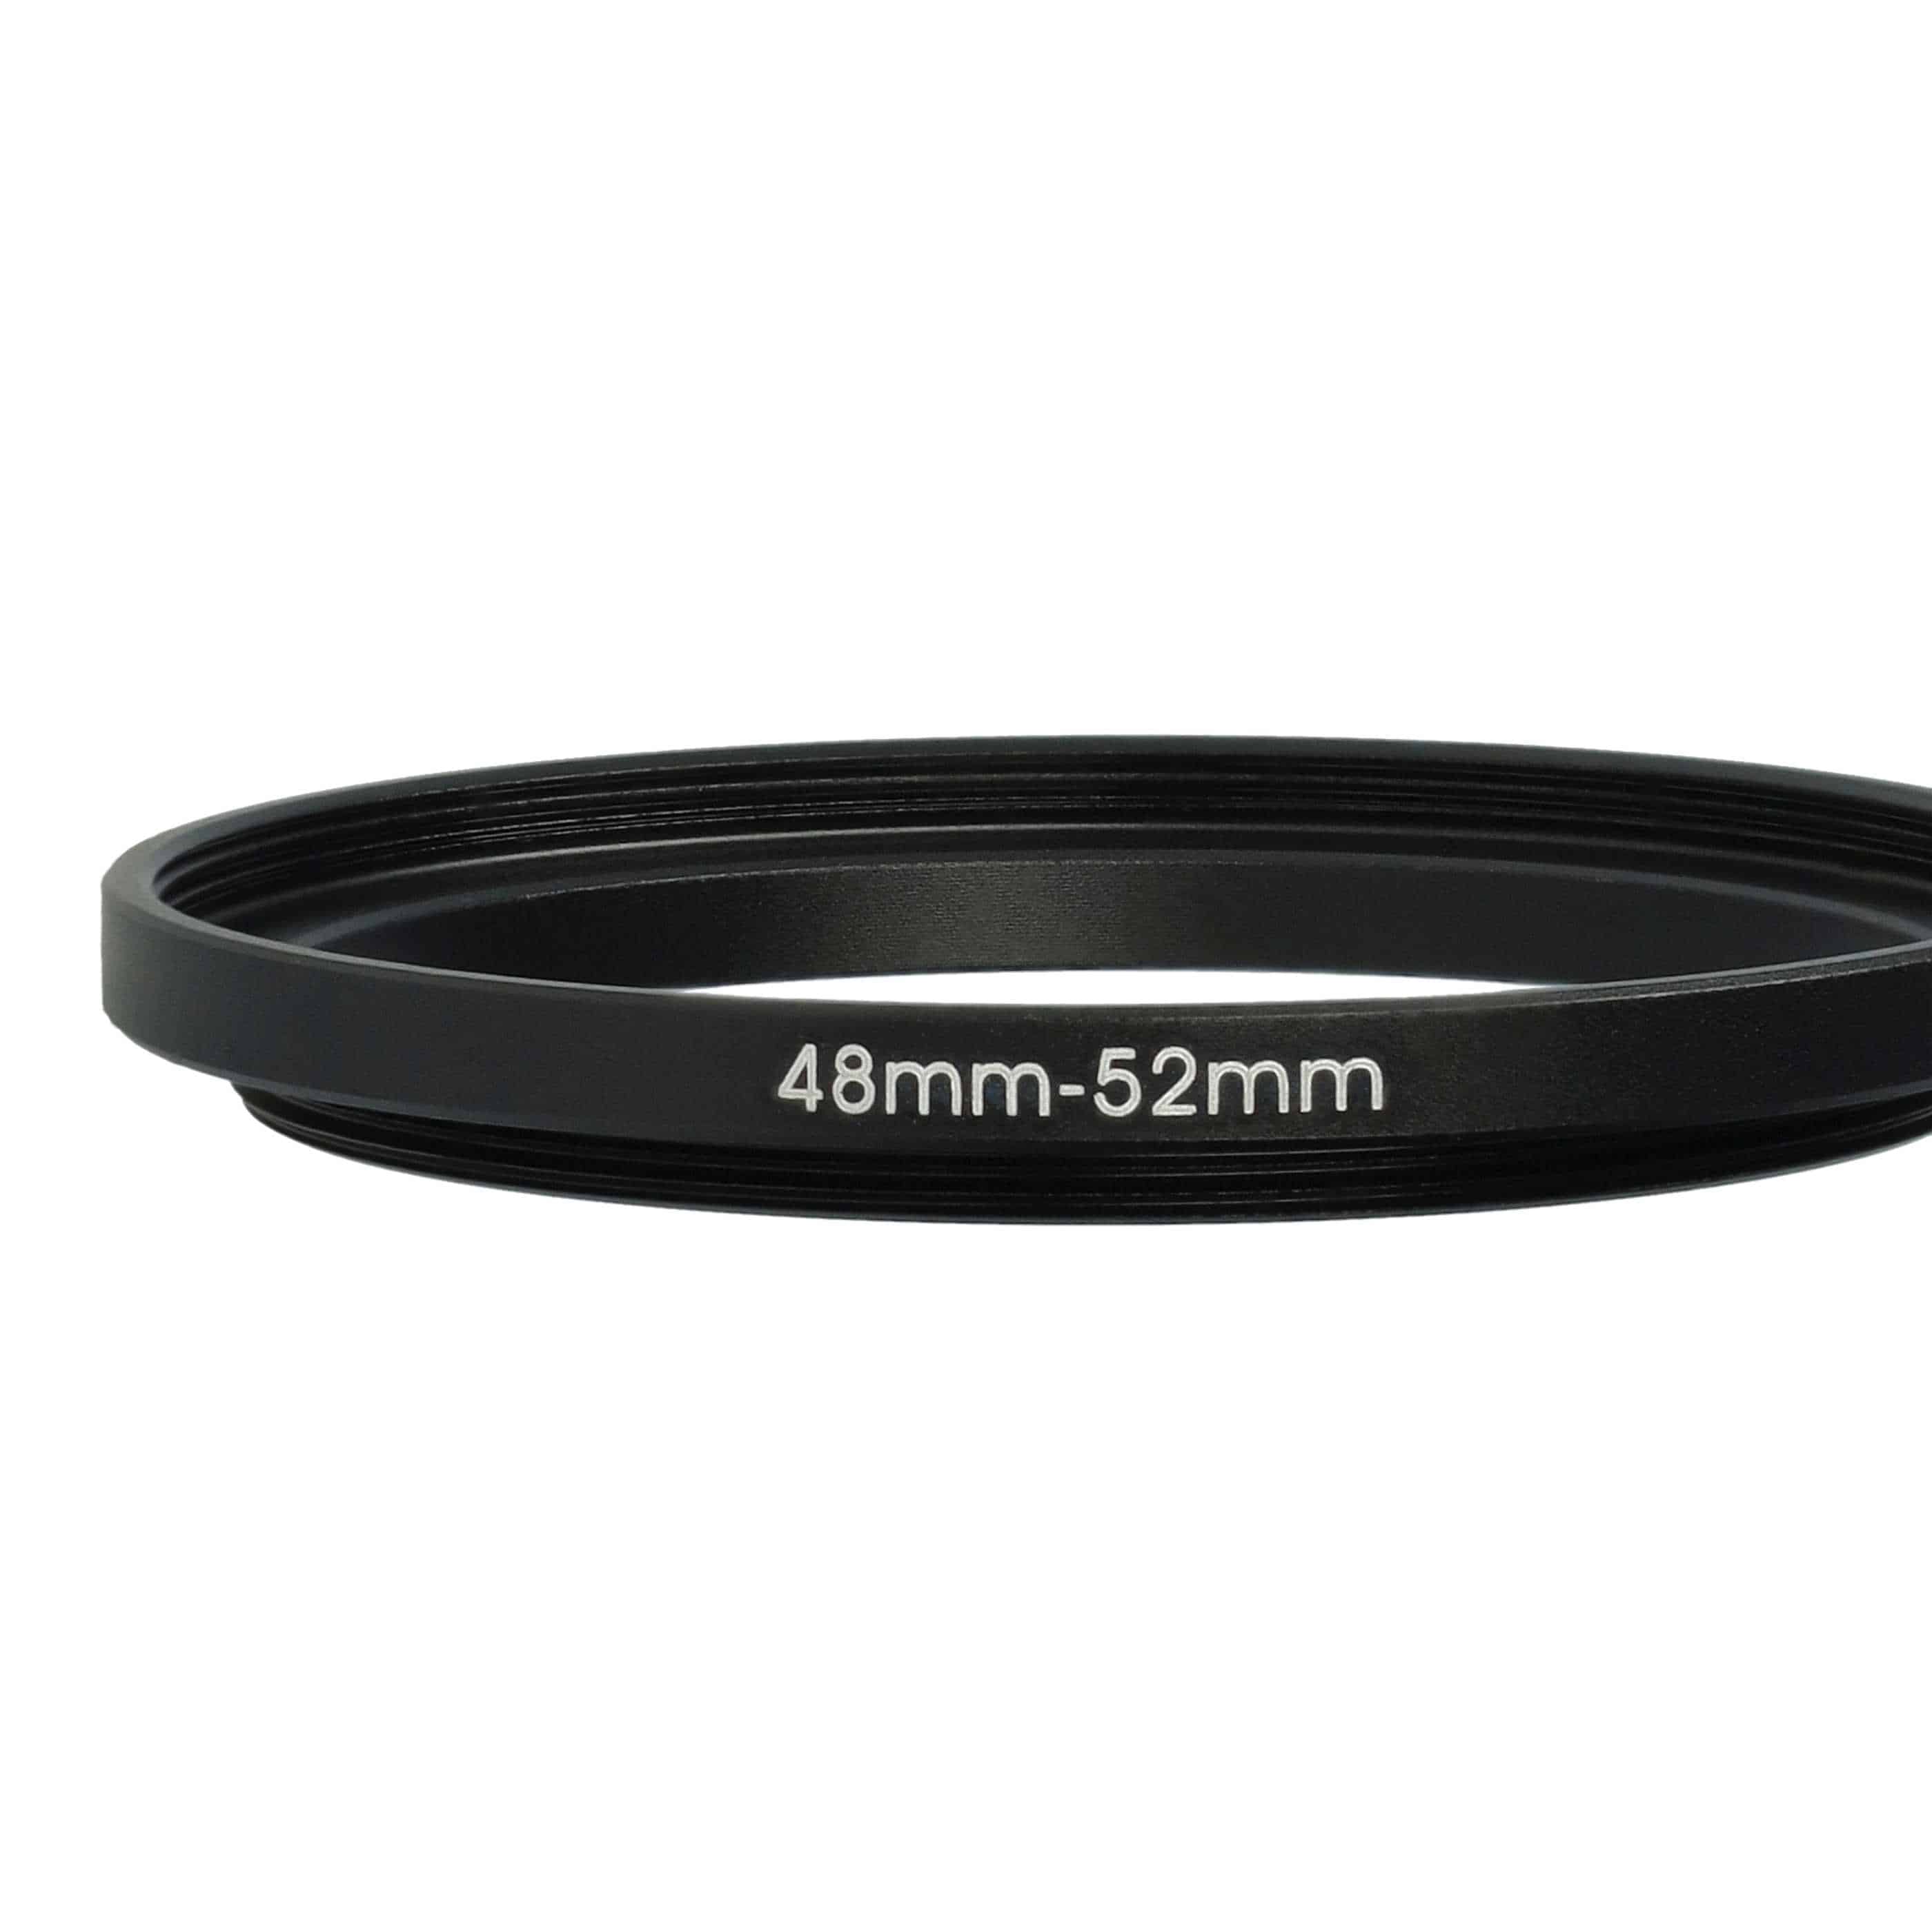 Bague Step-up 48 mm vers 52 mm pour divers objectifs d'appareil photo - Adaptateur filtre